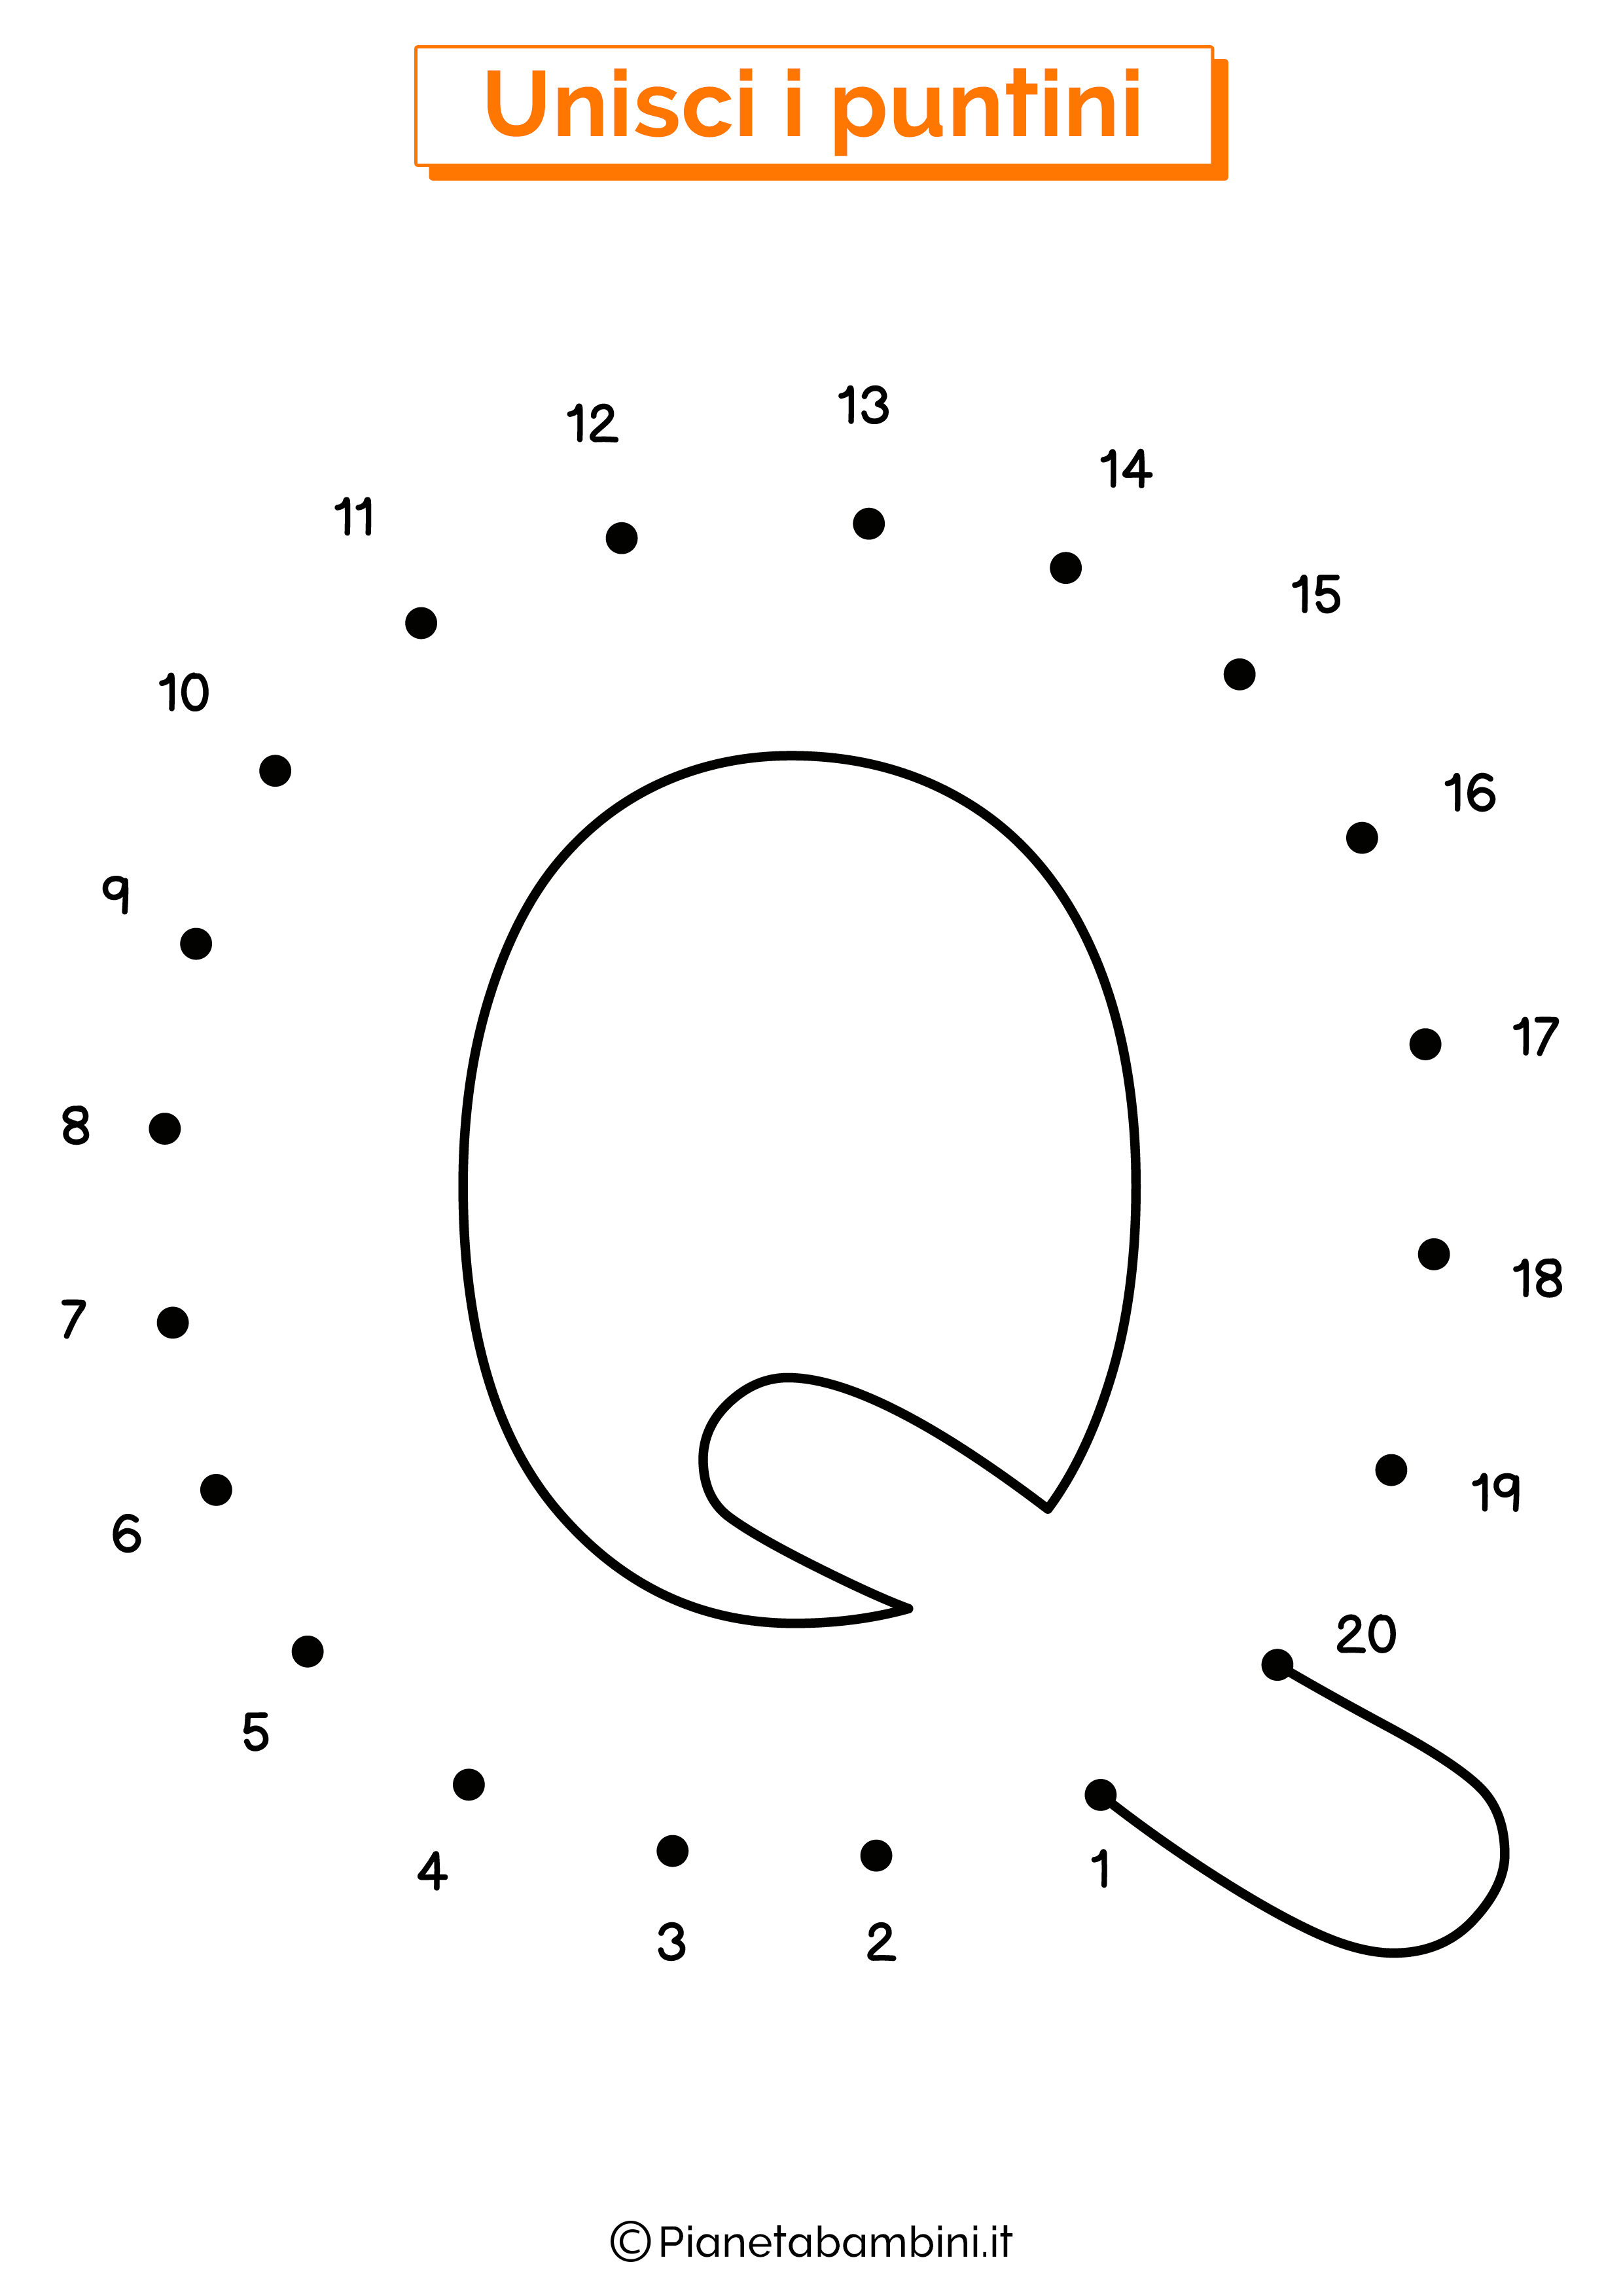 Unisci i puntini con la lettera Q